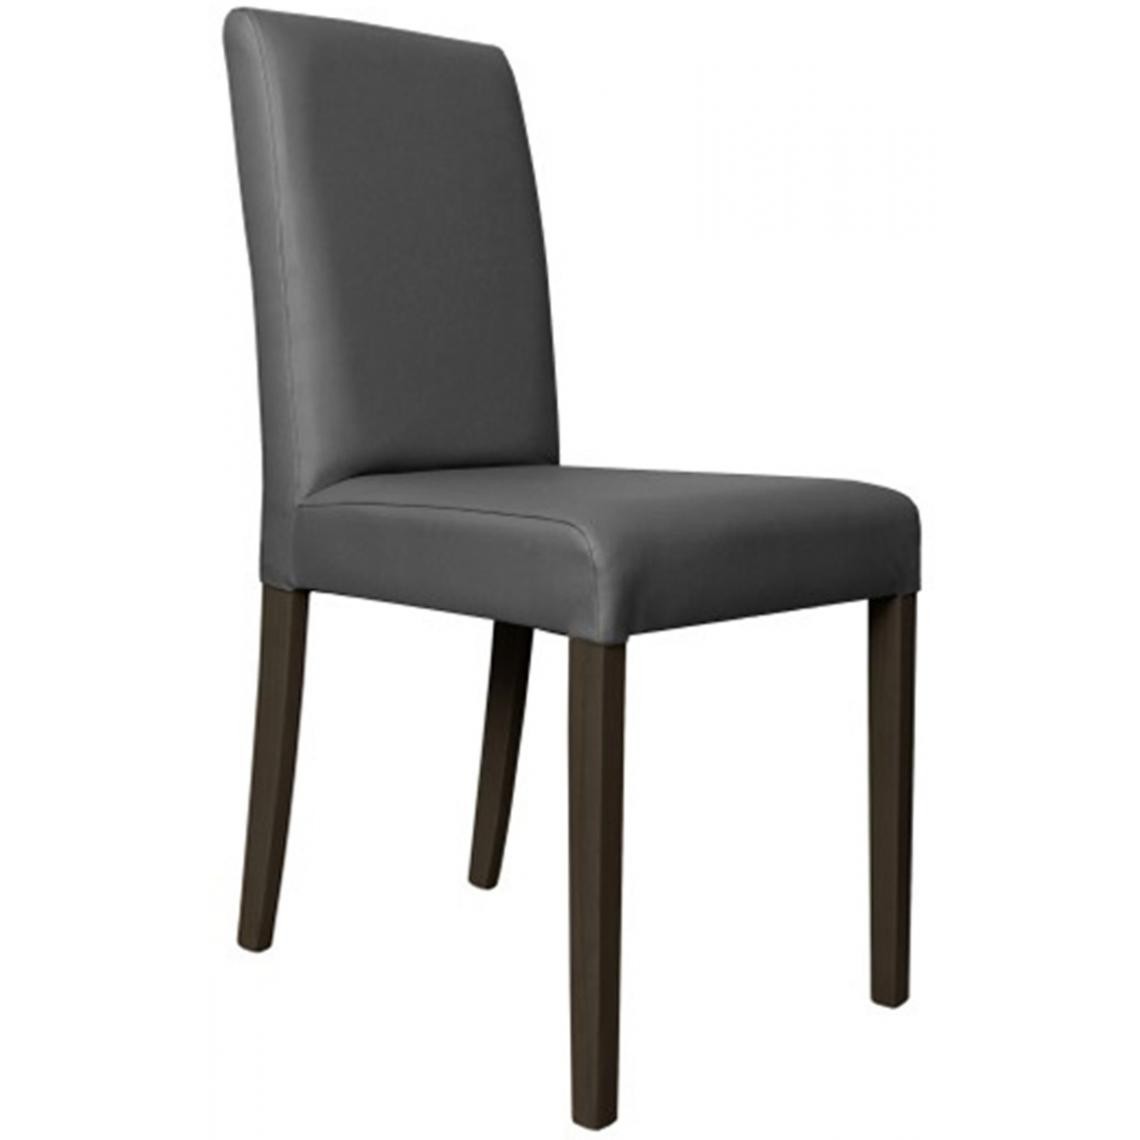 Pegane - Lot de 2 chaises en hêtre et Polyuréthane de couleur grise, Ht950 x Ht Ass500 x L490 x l440 mm - Chaises